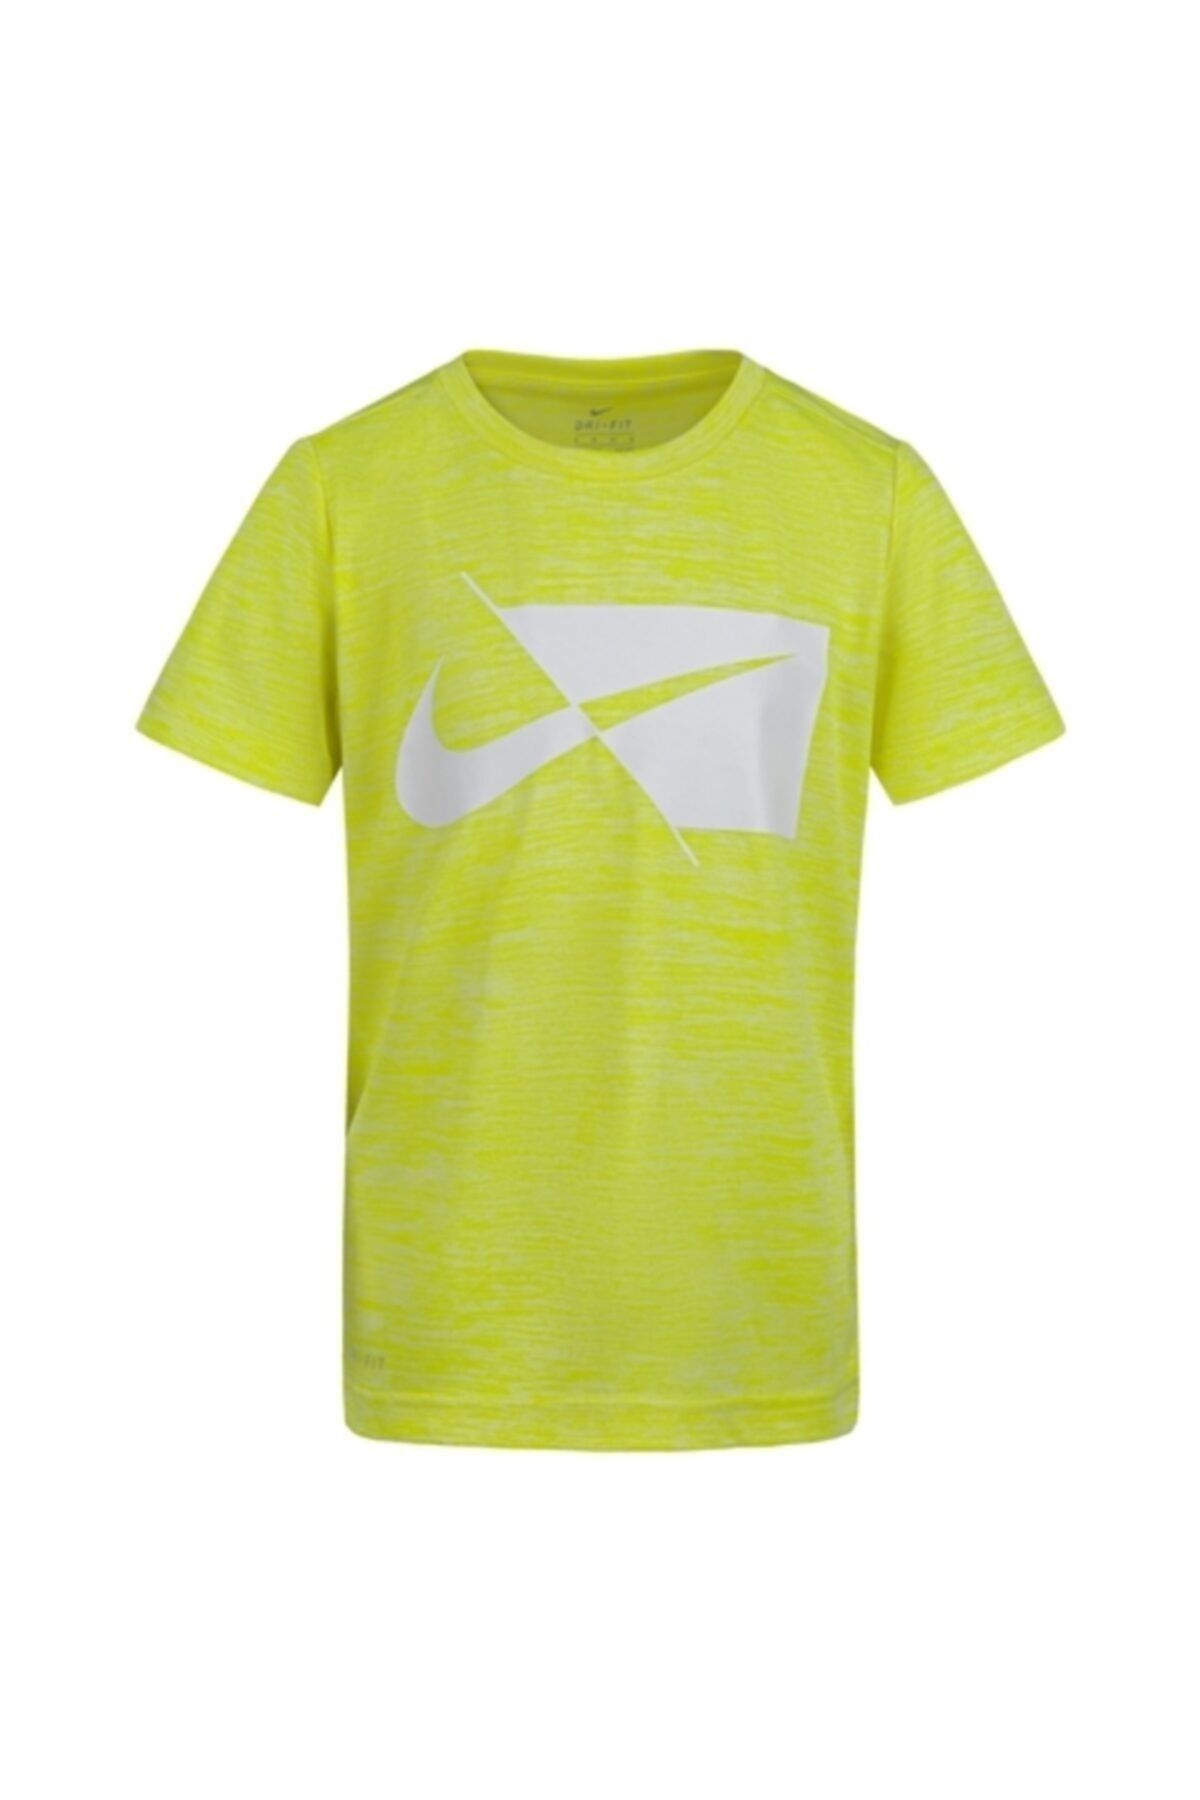 Nike Erkek Çocuk Yeşil T-shırt 86h475-y2m